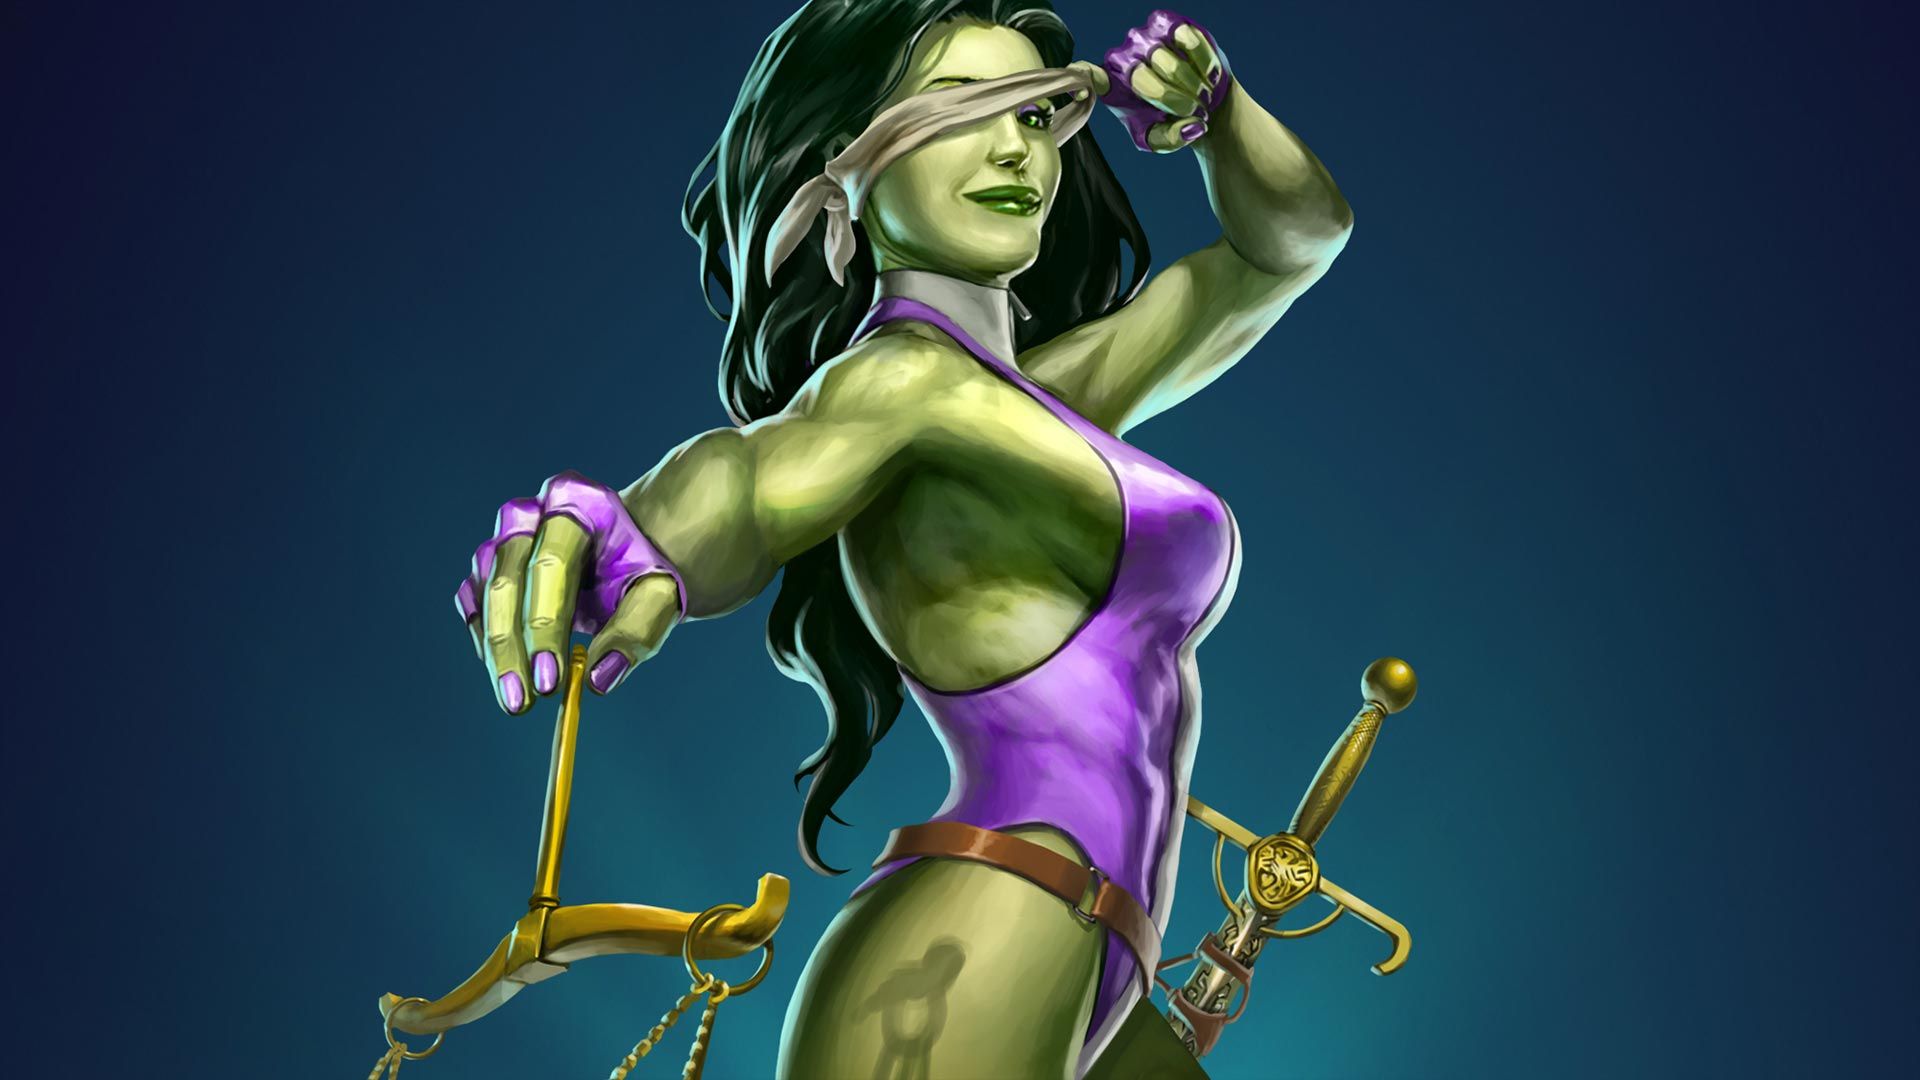 She Hulk Theme For Windows 10